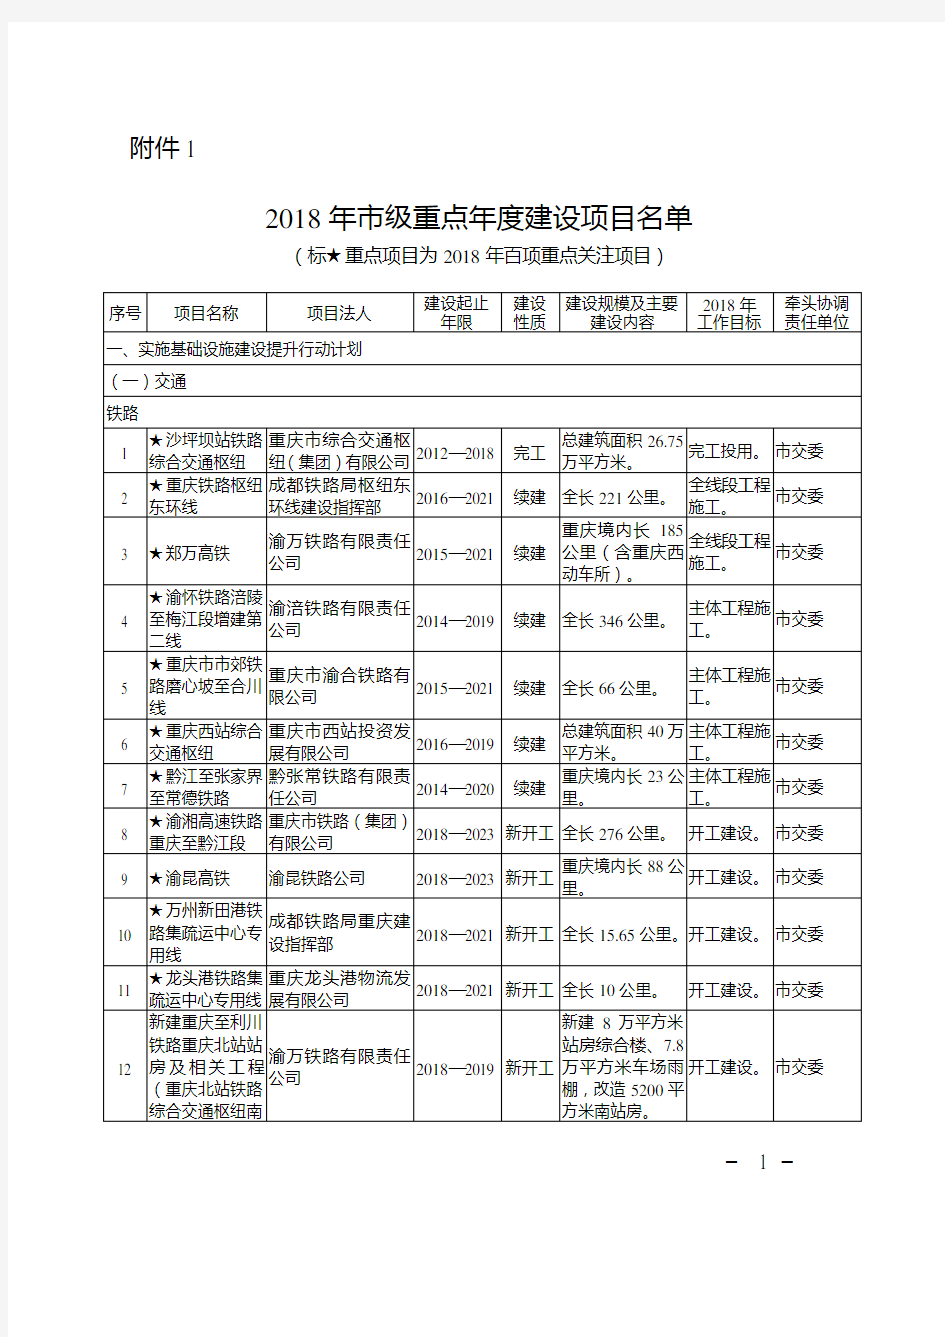 重庆市2018年市级重点年度建设项目名单